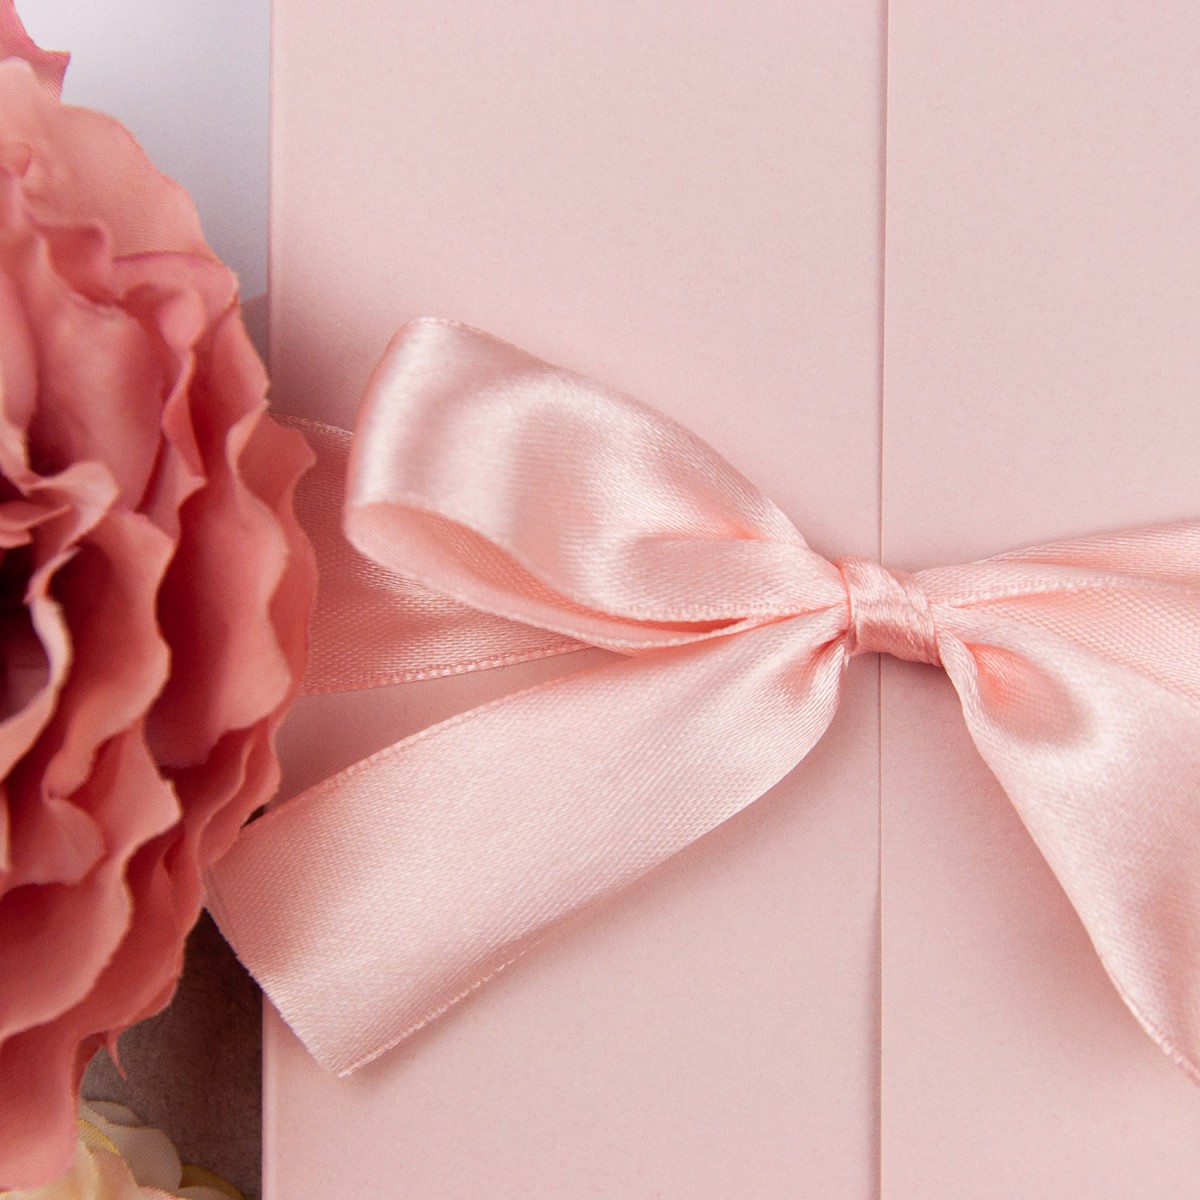 Eleganckie Zaproszenia Ślubne z kwiatowym motywem - Pink Princess - PRÓBKA